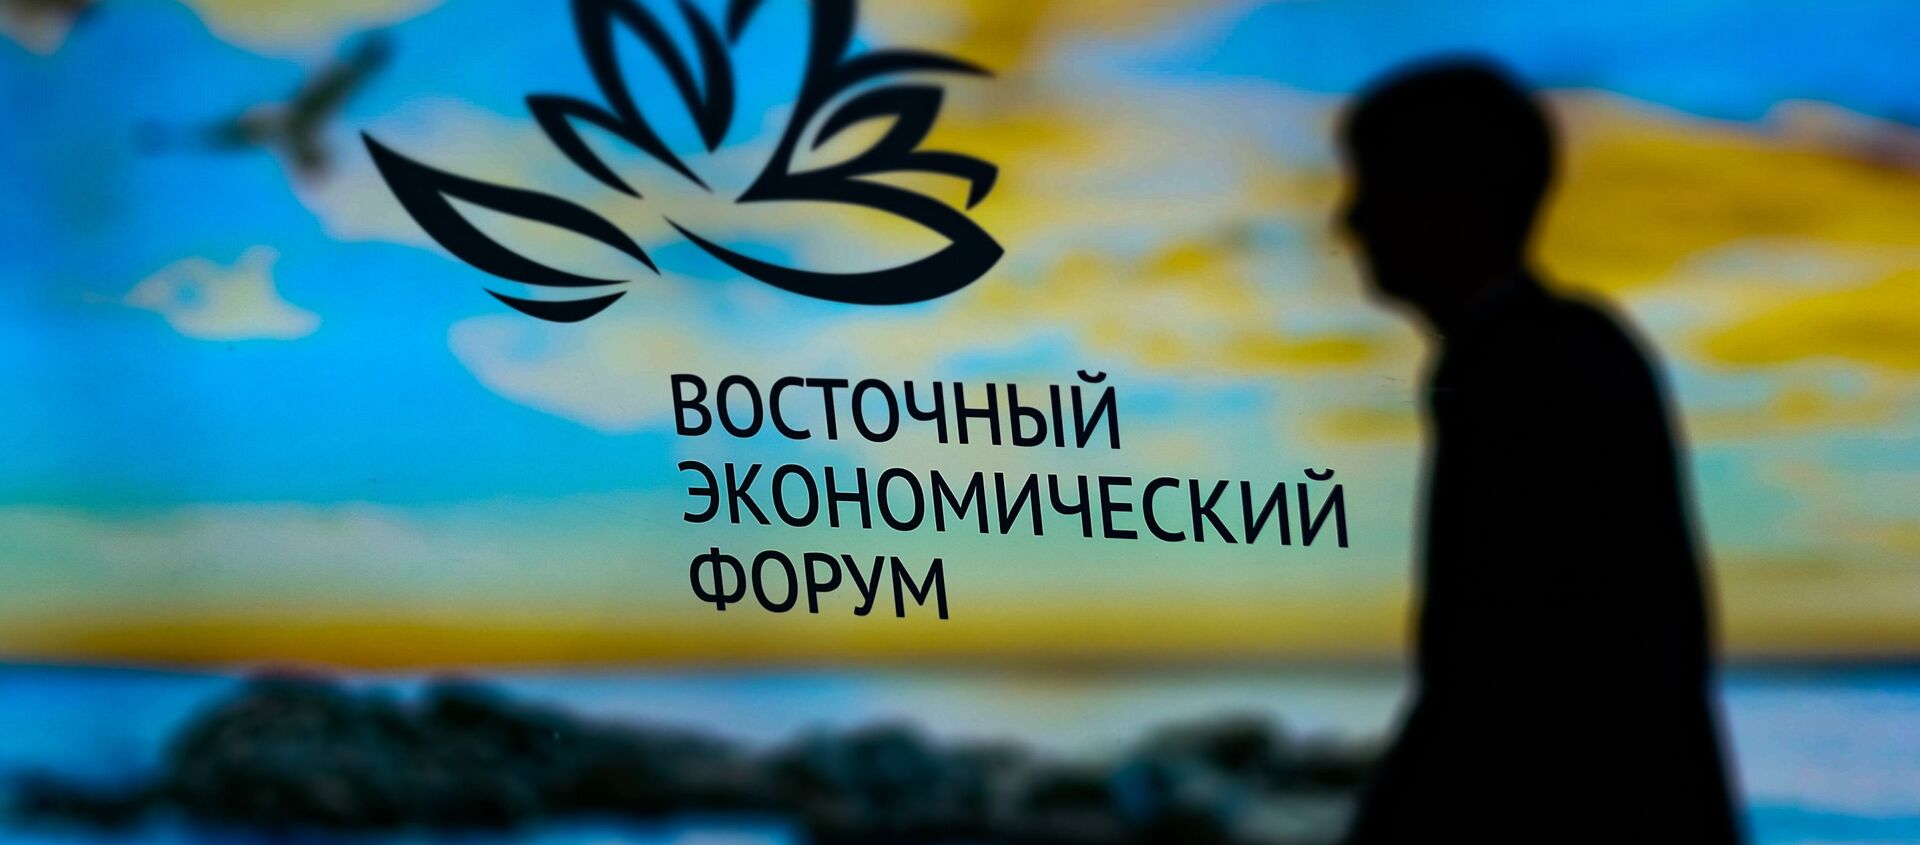 Эмблема IV Восточного экономического форума, проходящего во Владивостоке - Sputnik Việt Nam, 1920, 13.09.2018